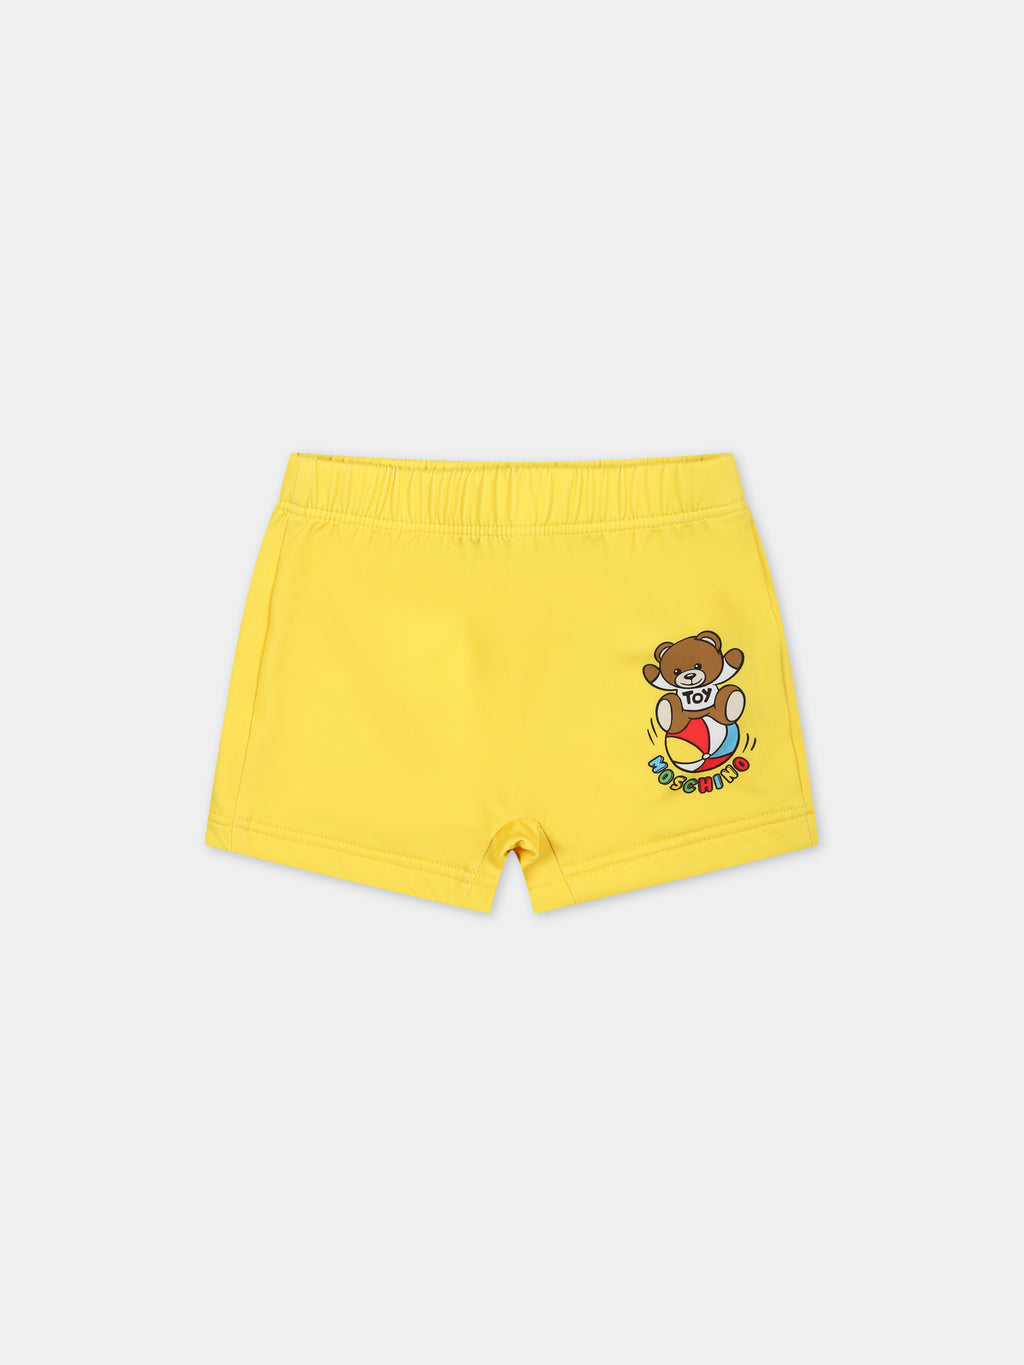 Short de bain jaune pour bébé garçon avec Teddy Bear et logo multicolore